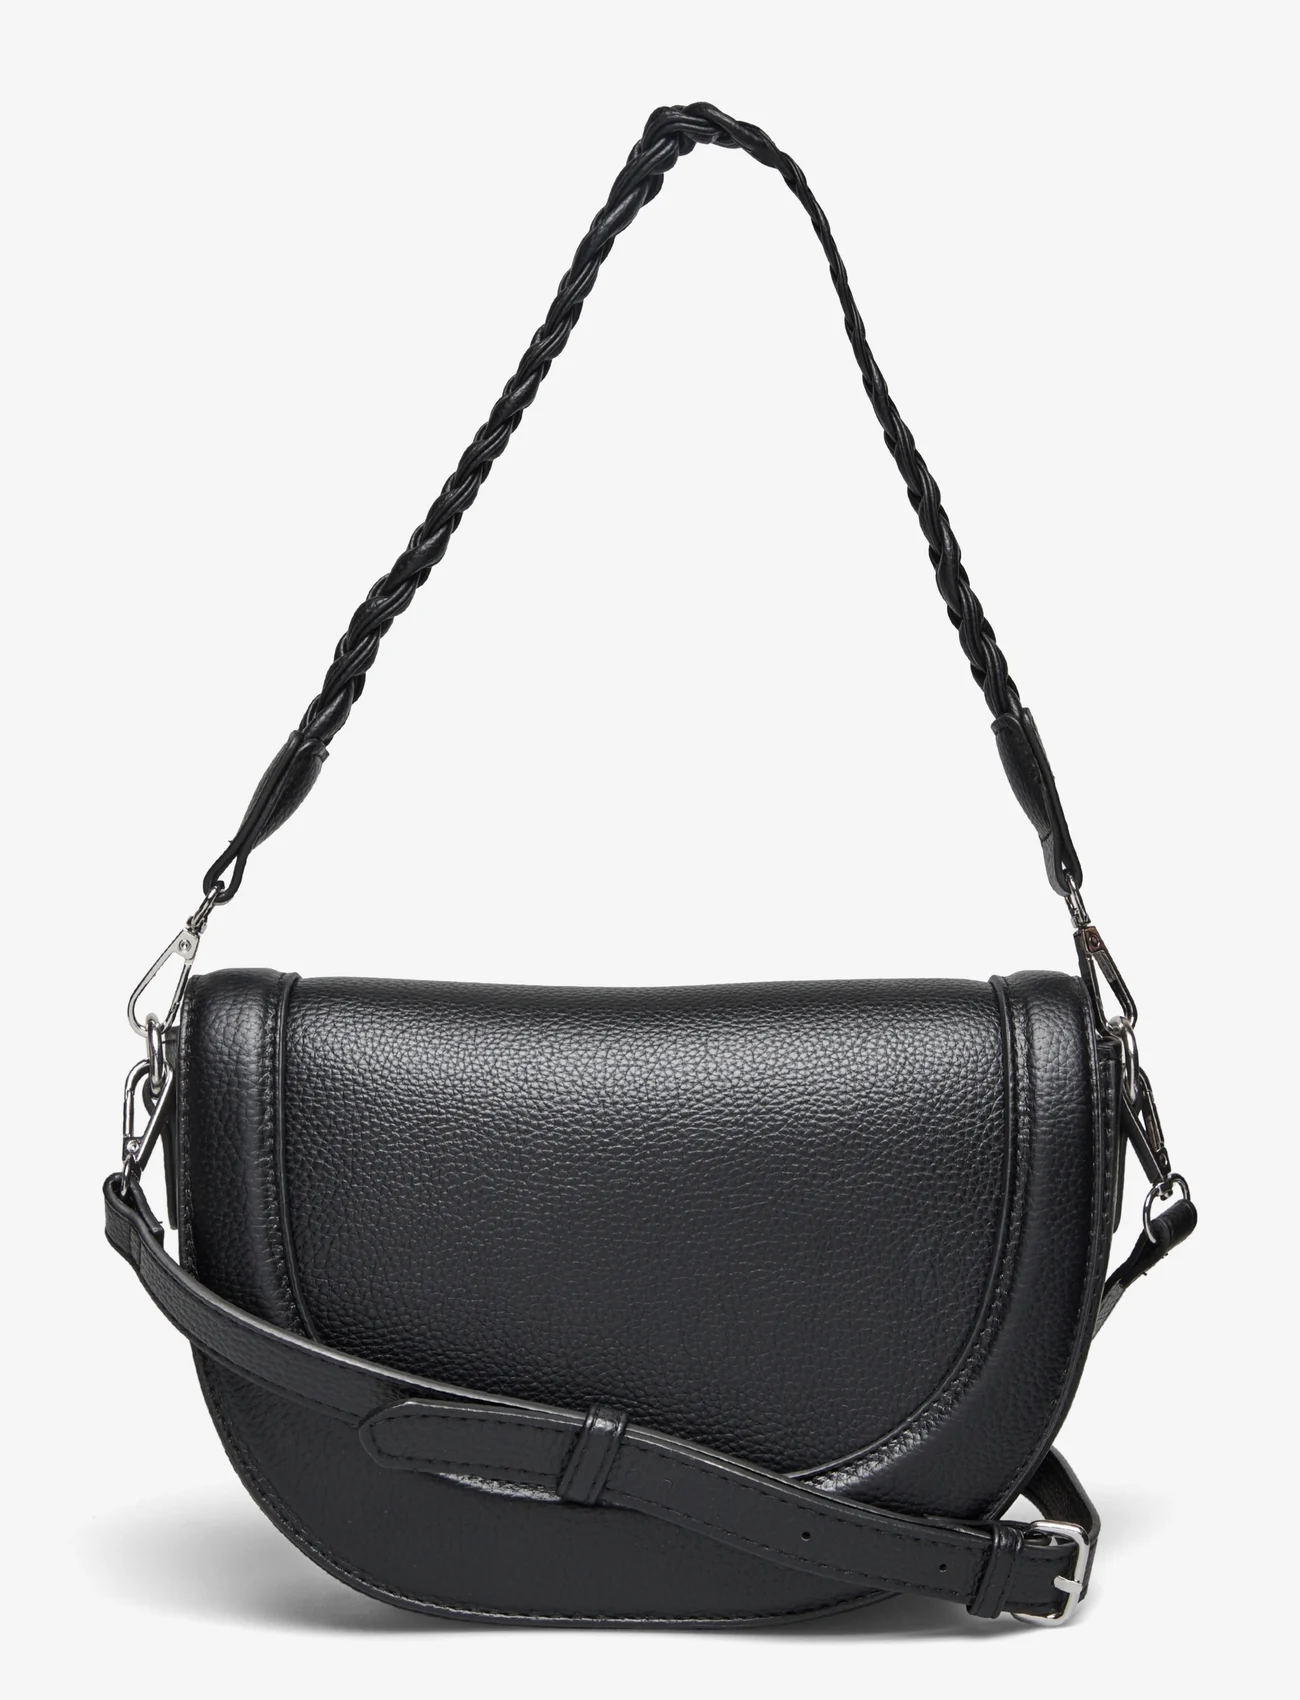 Lindex - Bag Susan w braided strap - odzież imprezowa w cenach outletowych - black - 0